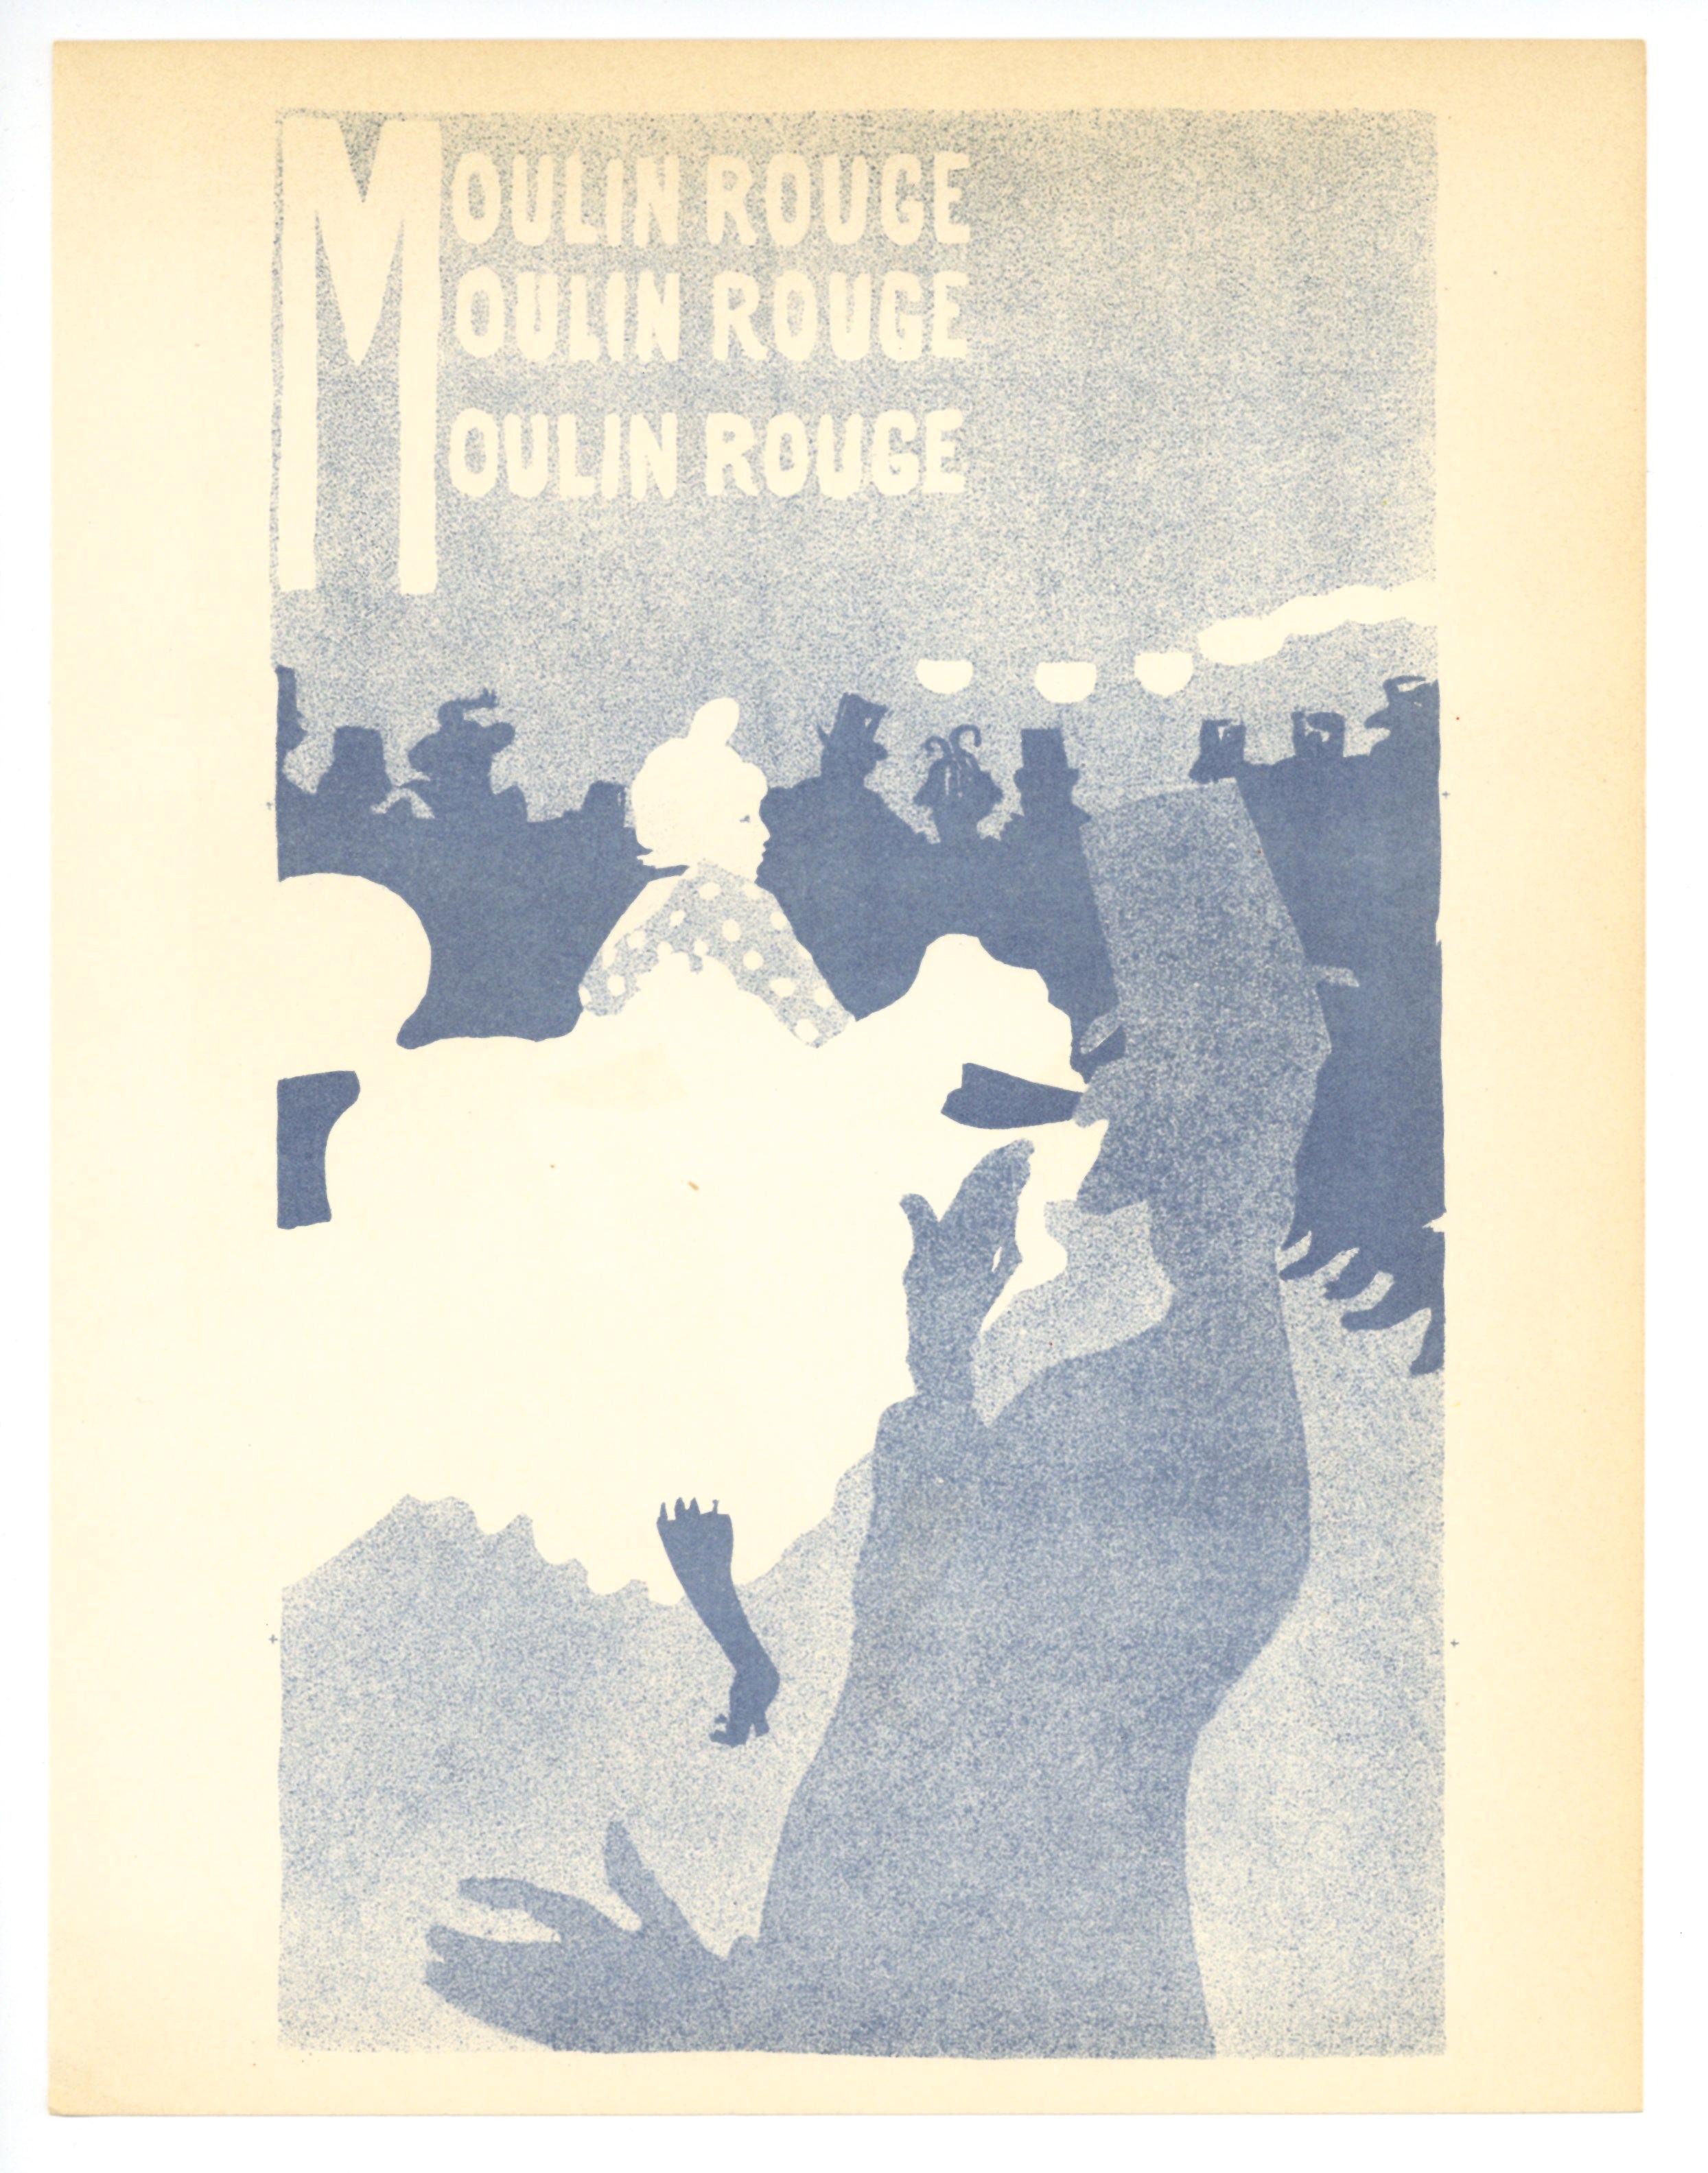 Support : lithographie (d'après l'affiche). Imprimée à Paris en 1950 par Mourlot Frères, cette lithographie en couleurs sur plusieurs pierres reproduit fidèlement l'affiche originale de Toulouse-Lautrec dans un format plus petit. Taille de la